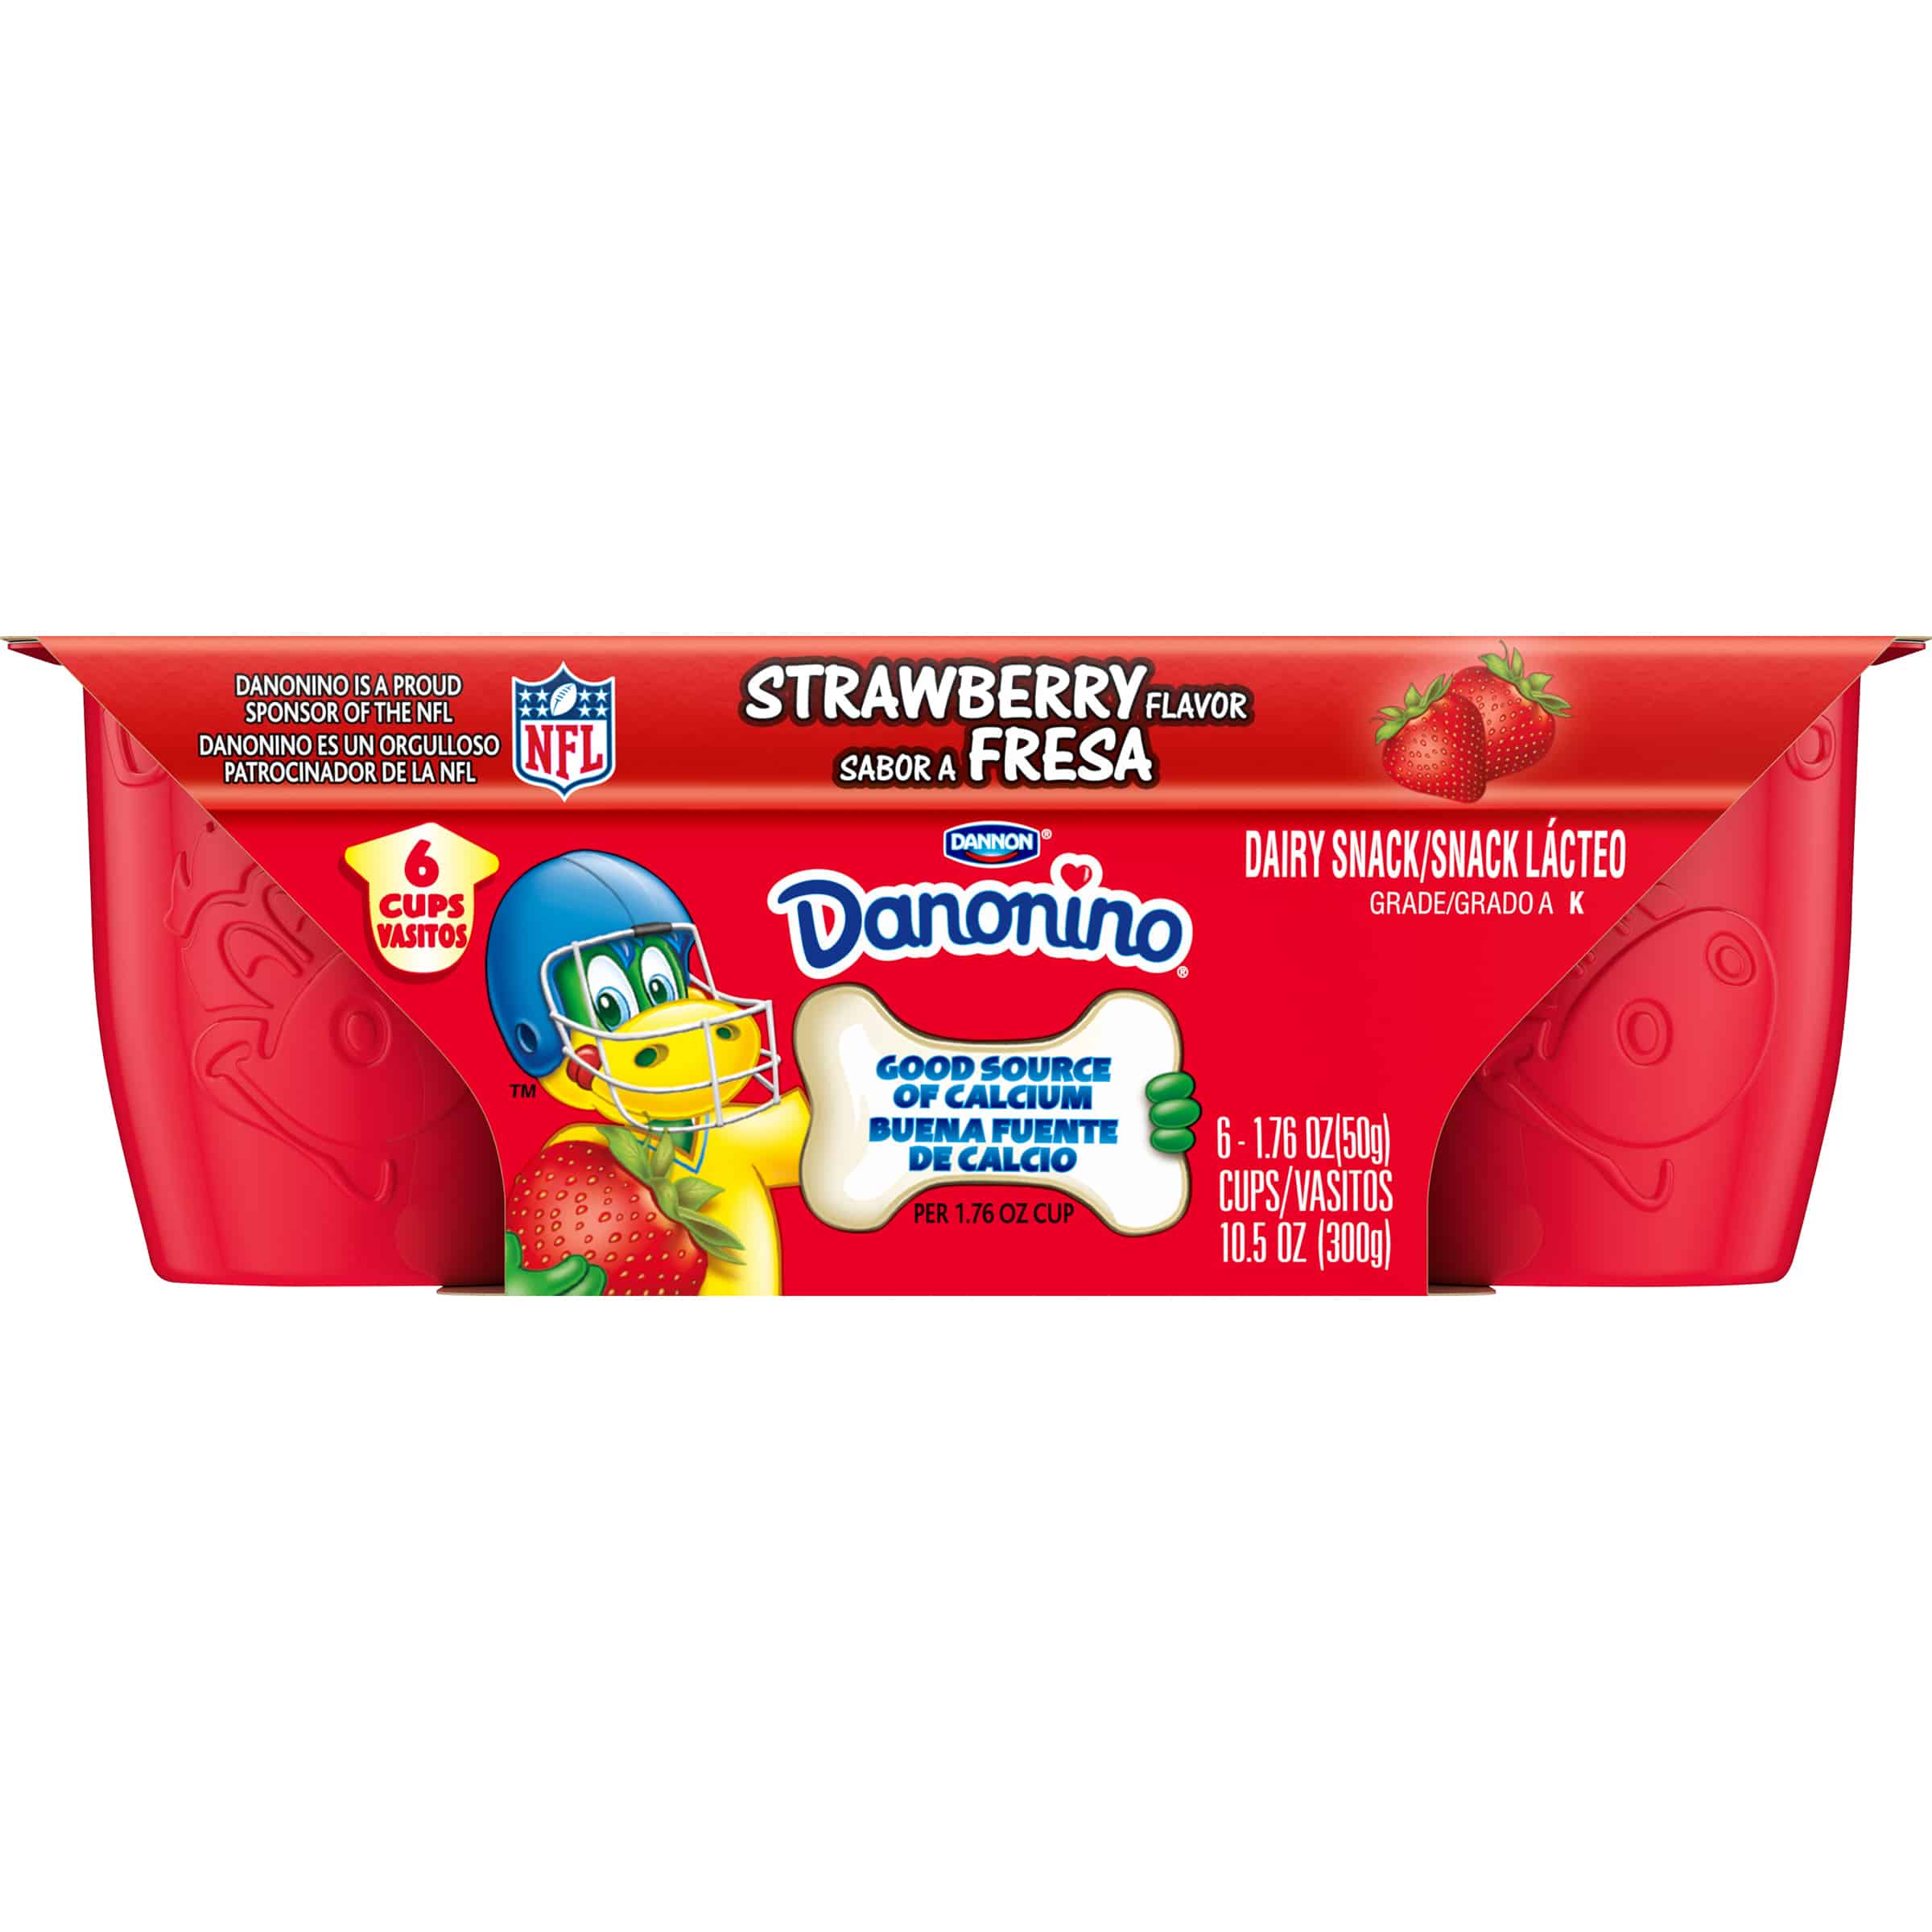 Dannon Danonino Grade A Strawberry Dairy Snacks, 1.76 Oz., 6 Cups